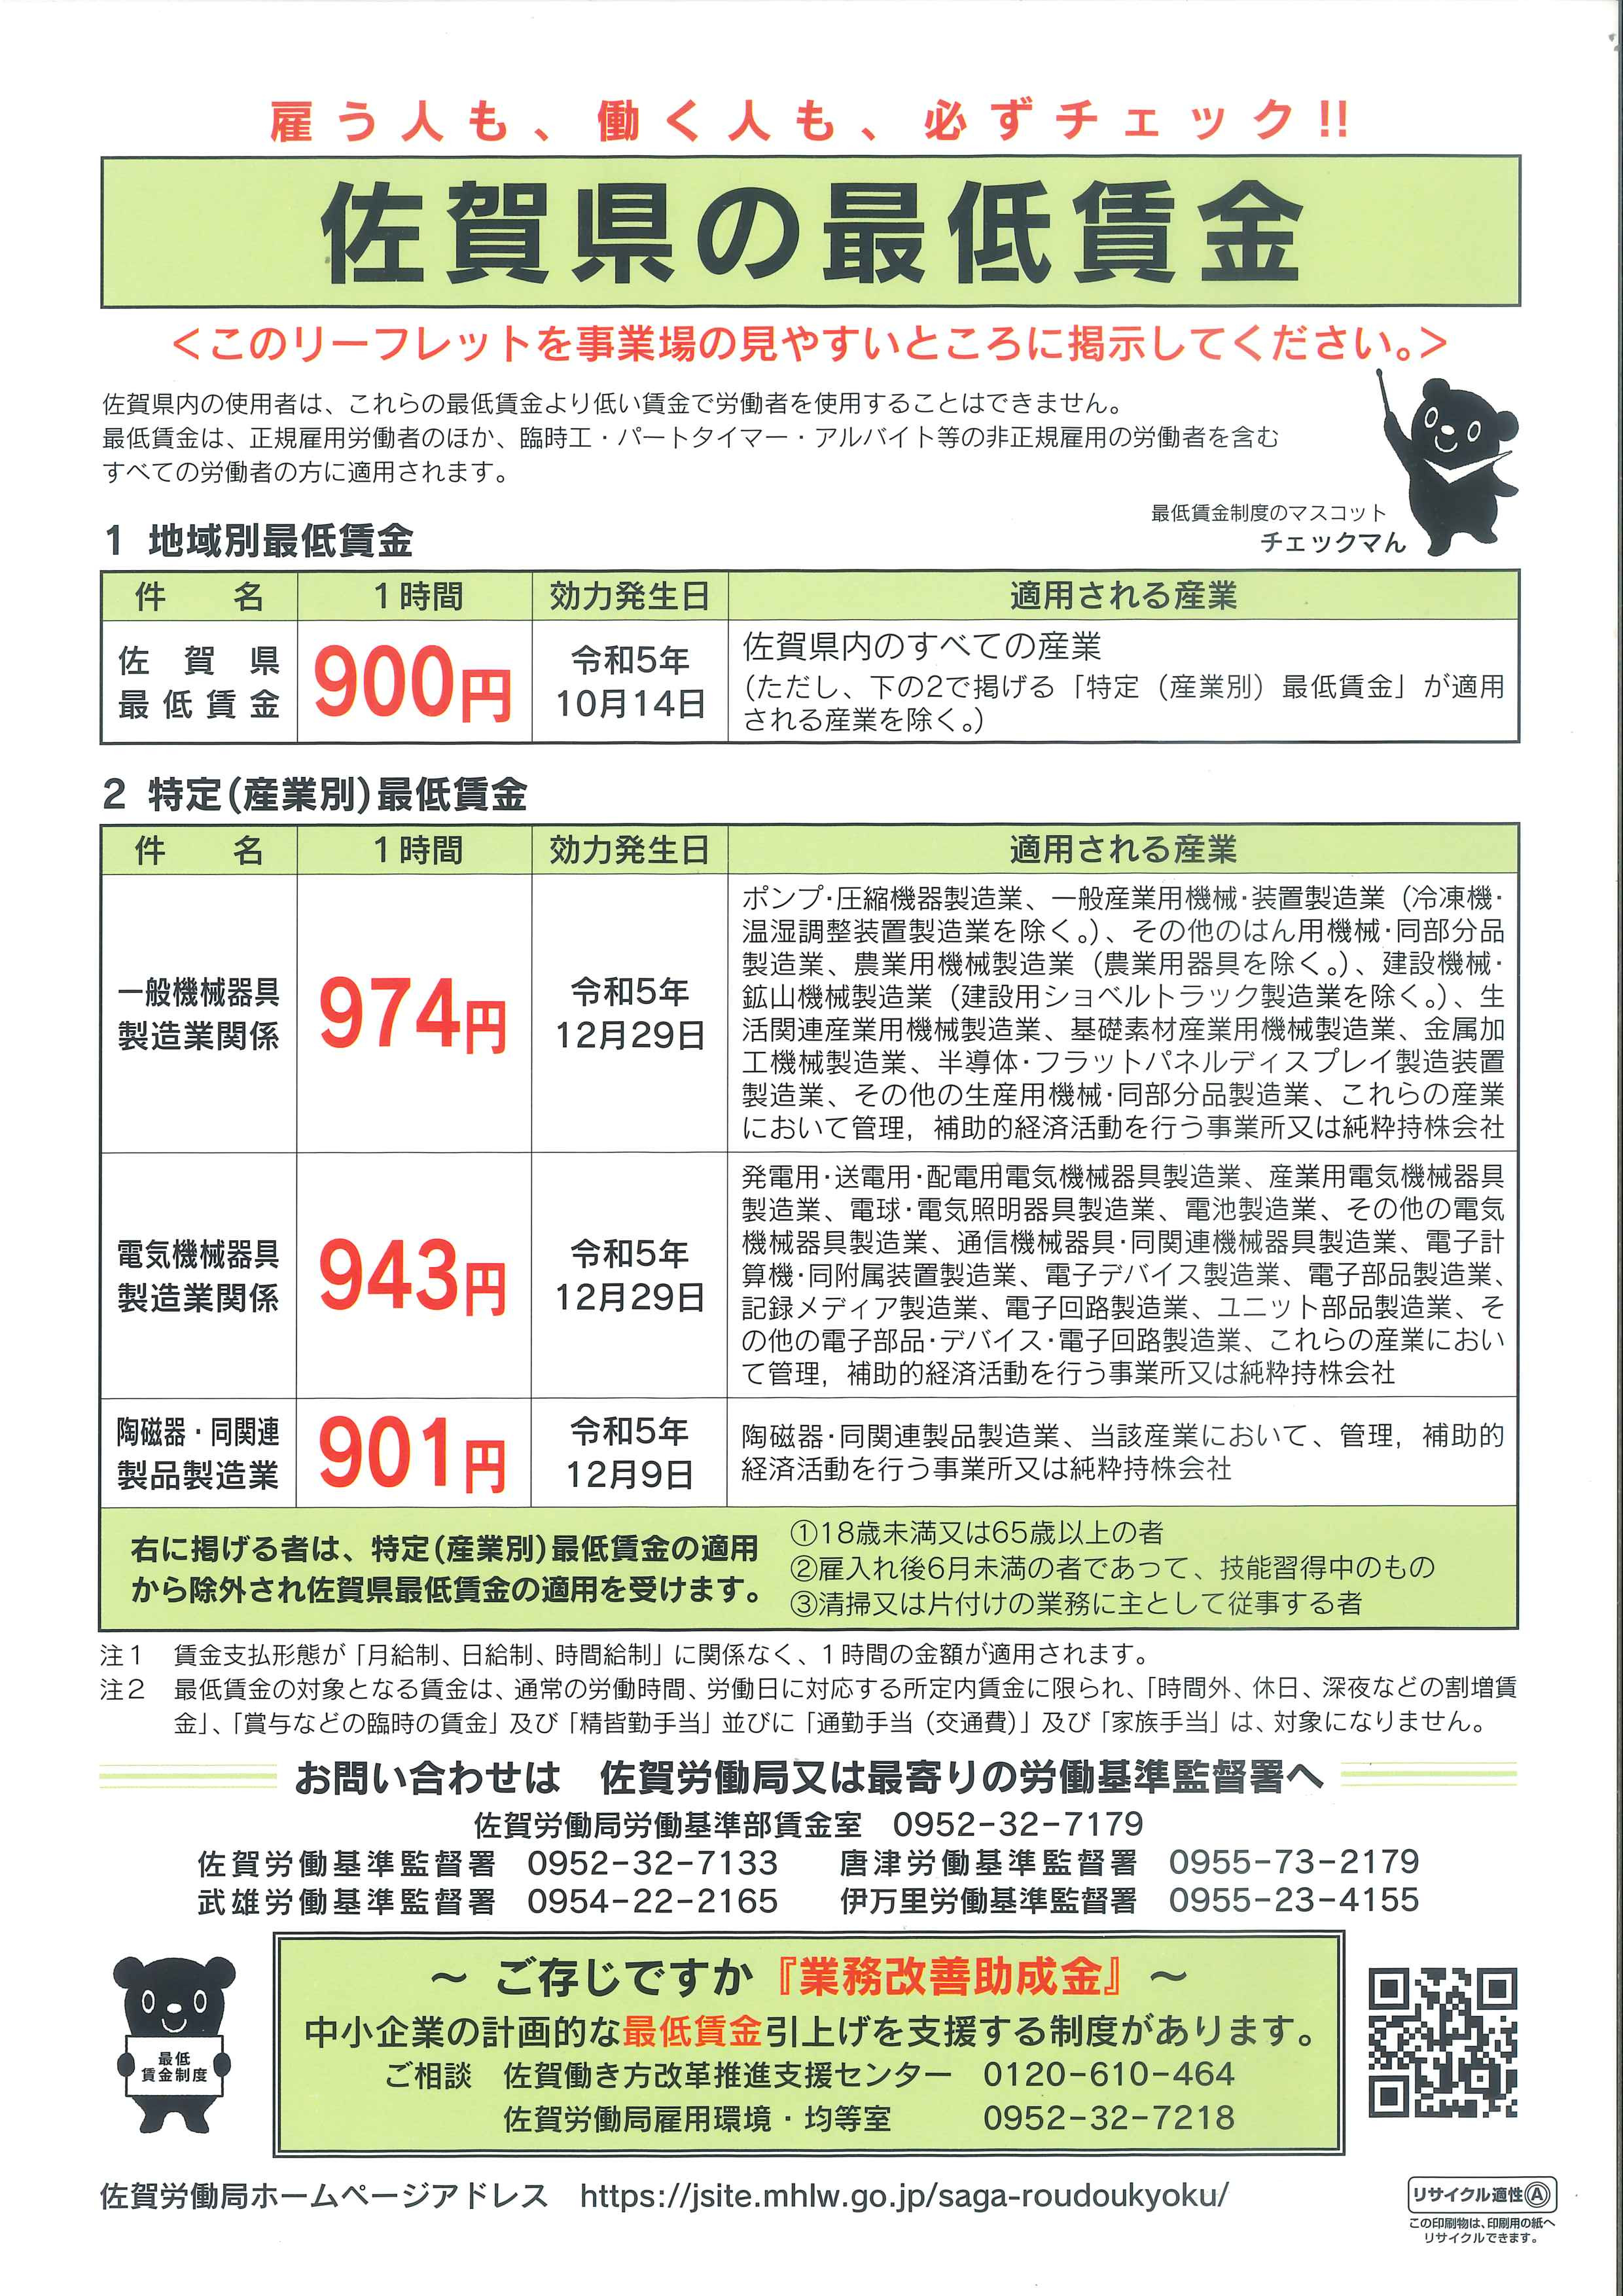 佐賀県の最低賃金改定について【再周知】